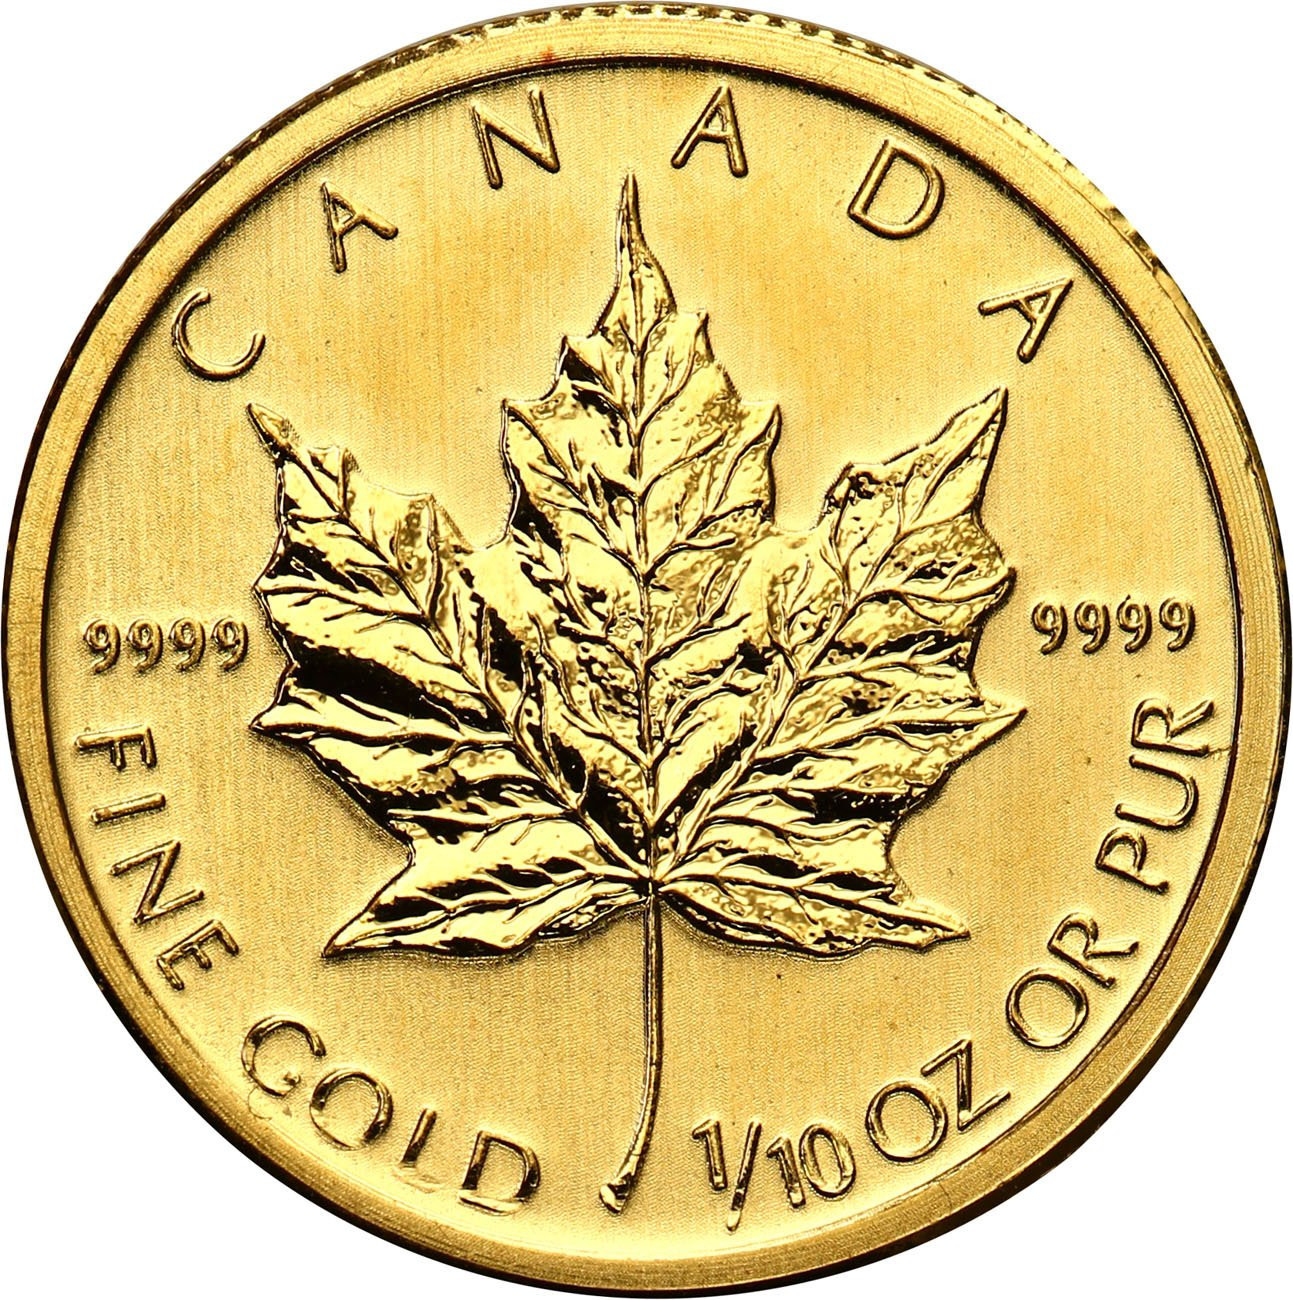 Kanada. 5 dolarów 2011 liść klonowy - 1/10 uncji złota